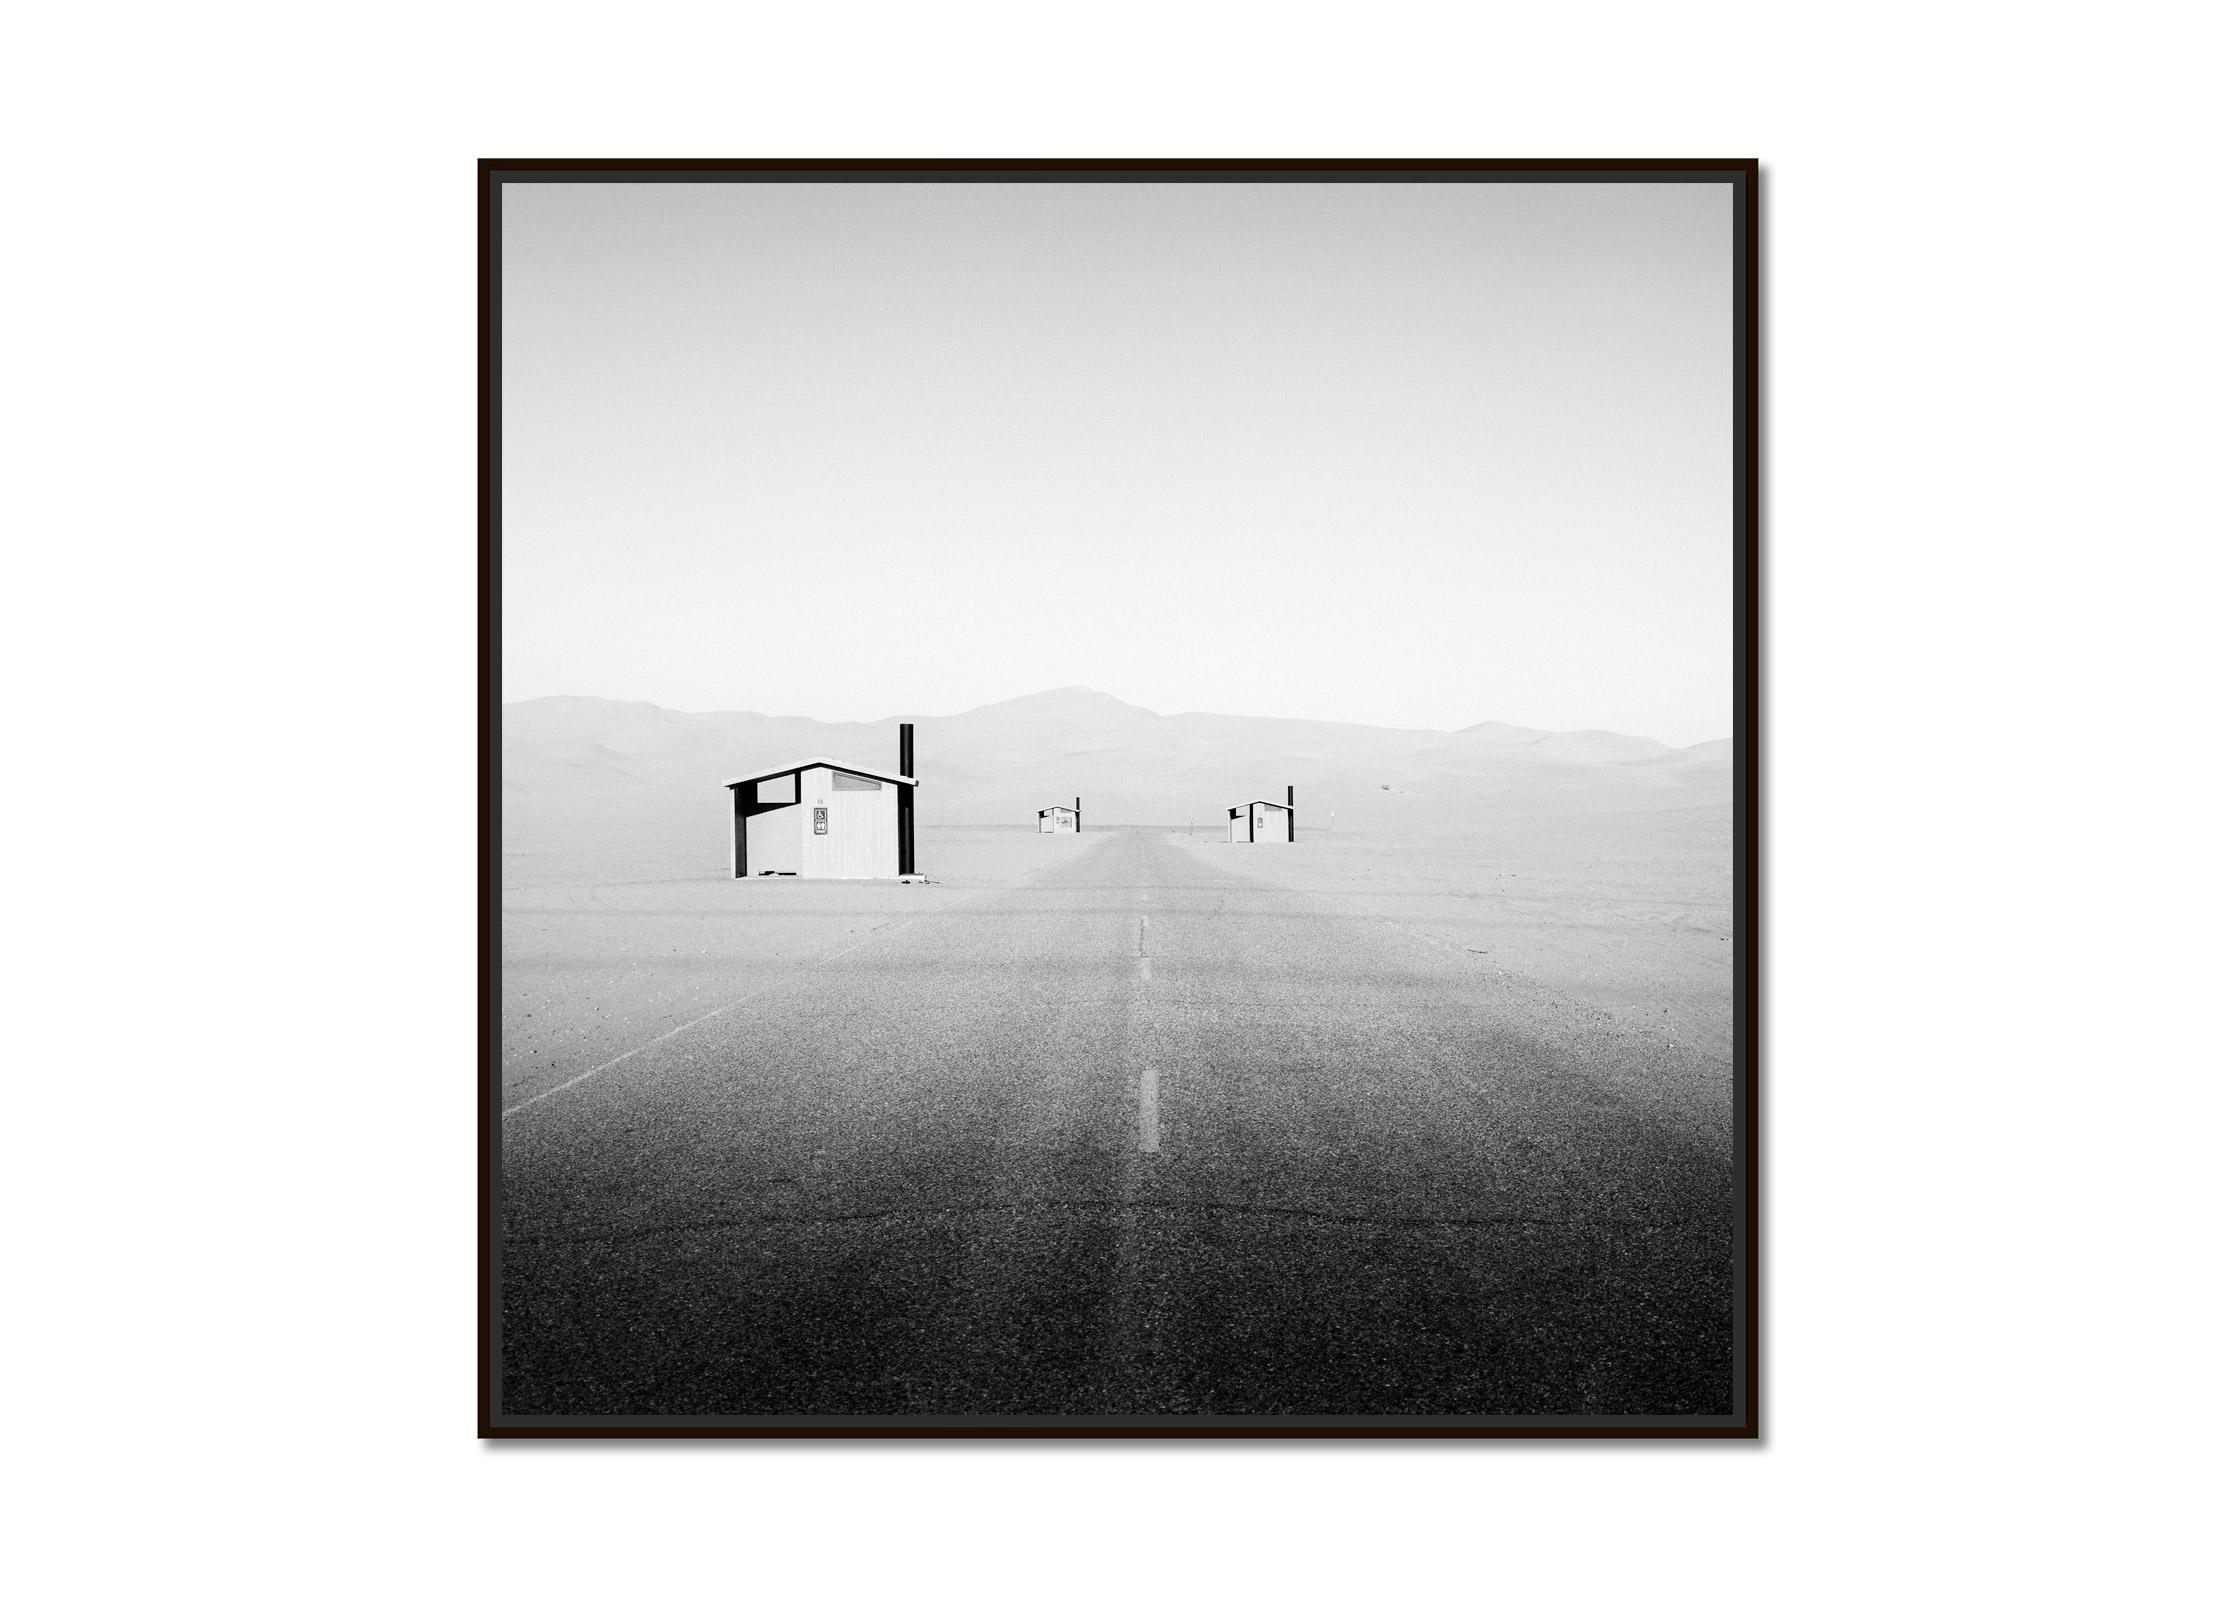 Mexikanische Grenze, Camping, Arizona, USA, Schwarz-Weiß-Landschaftsfotografie – Photograph von Gerald Berghammer